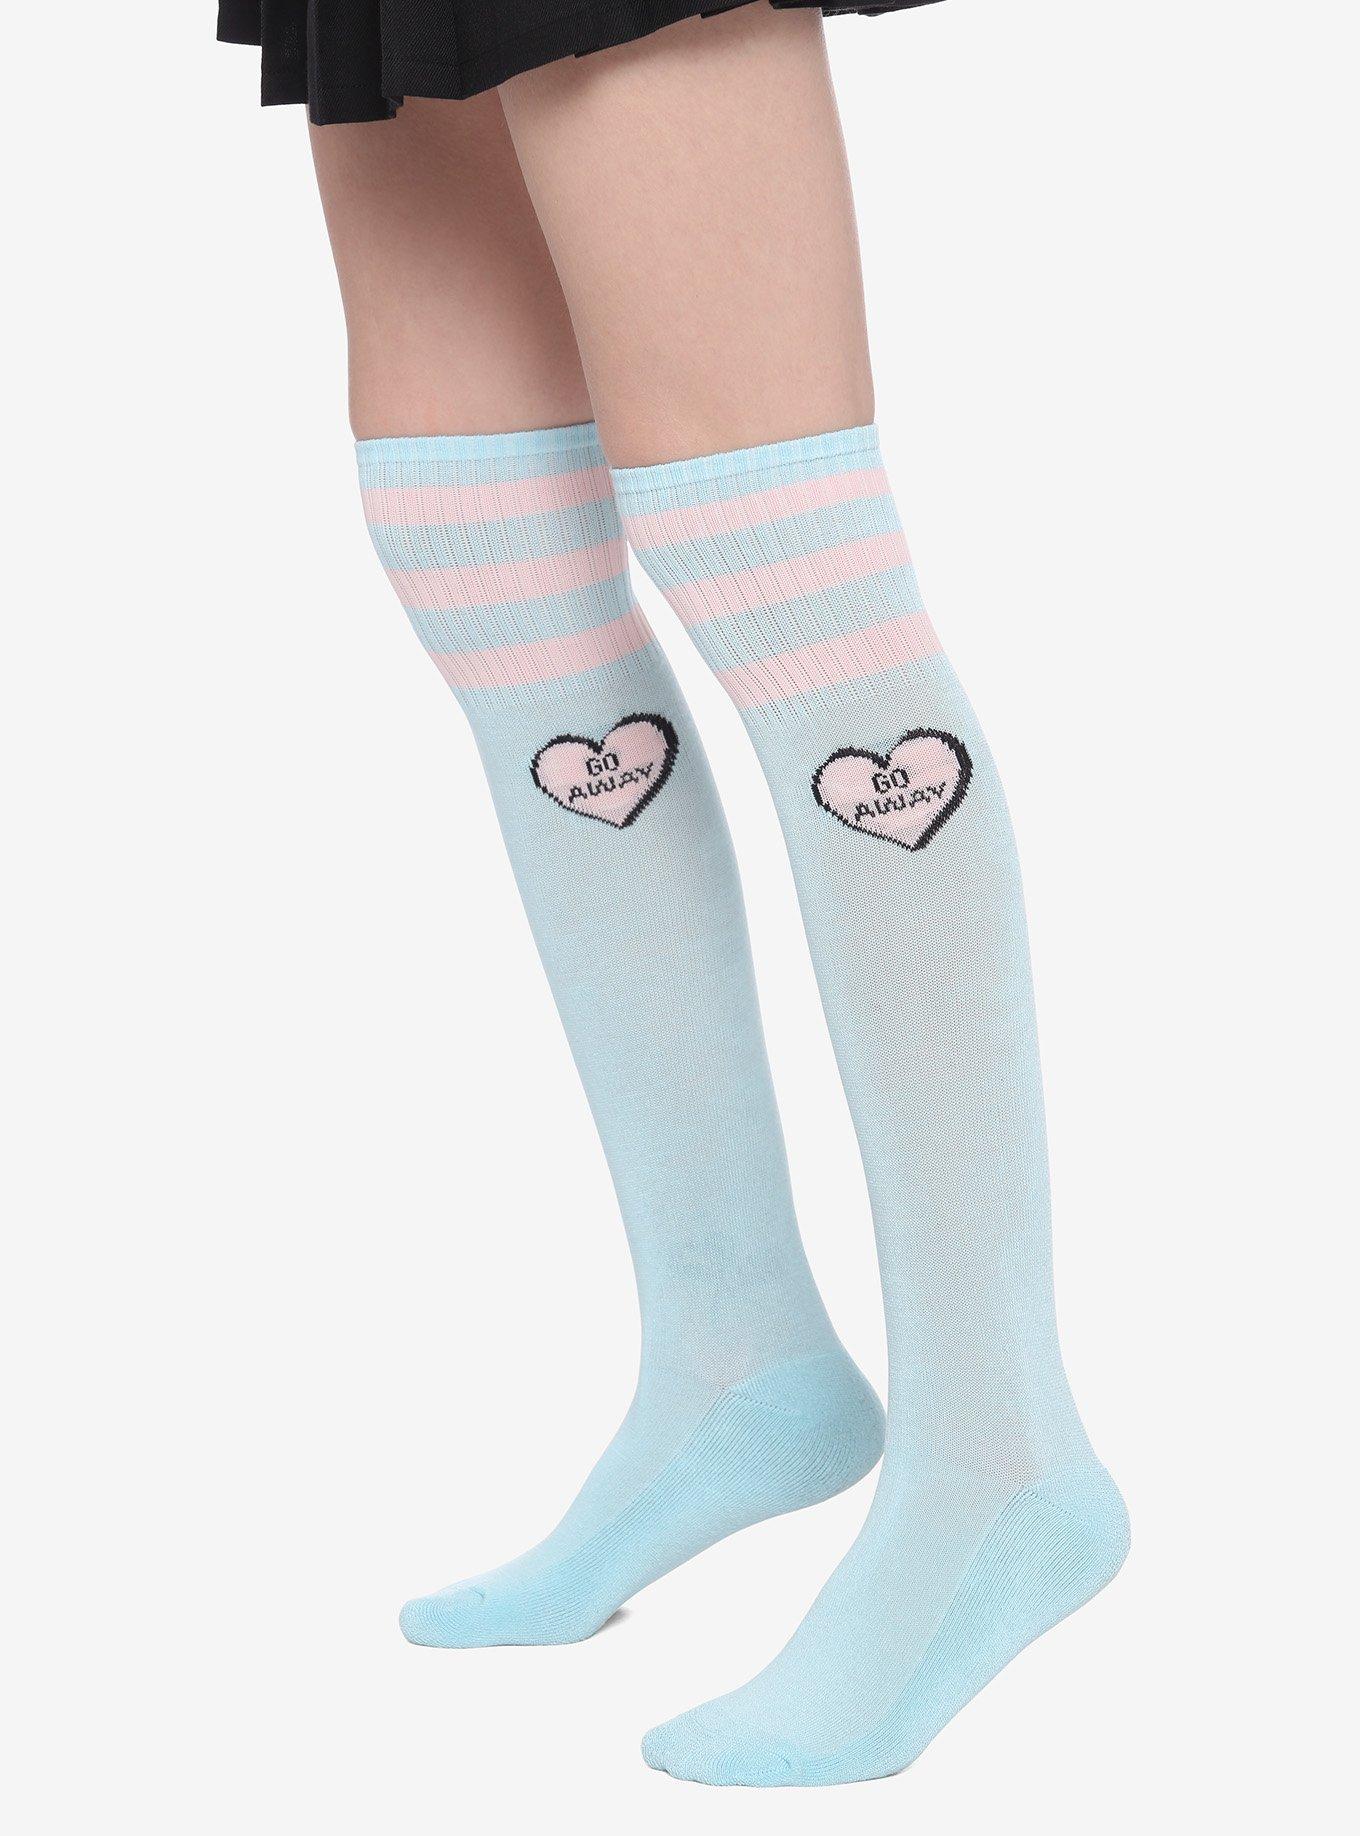 Go Away Heart Varsity Stripe Knee-High Socks, , hi-res